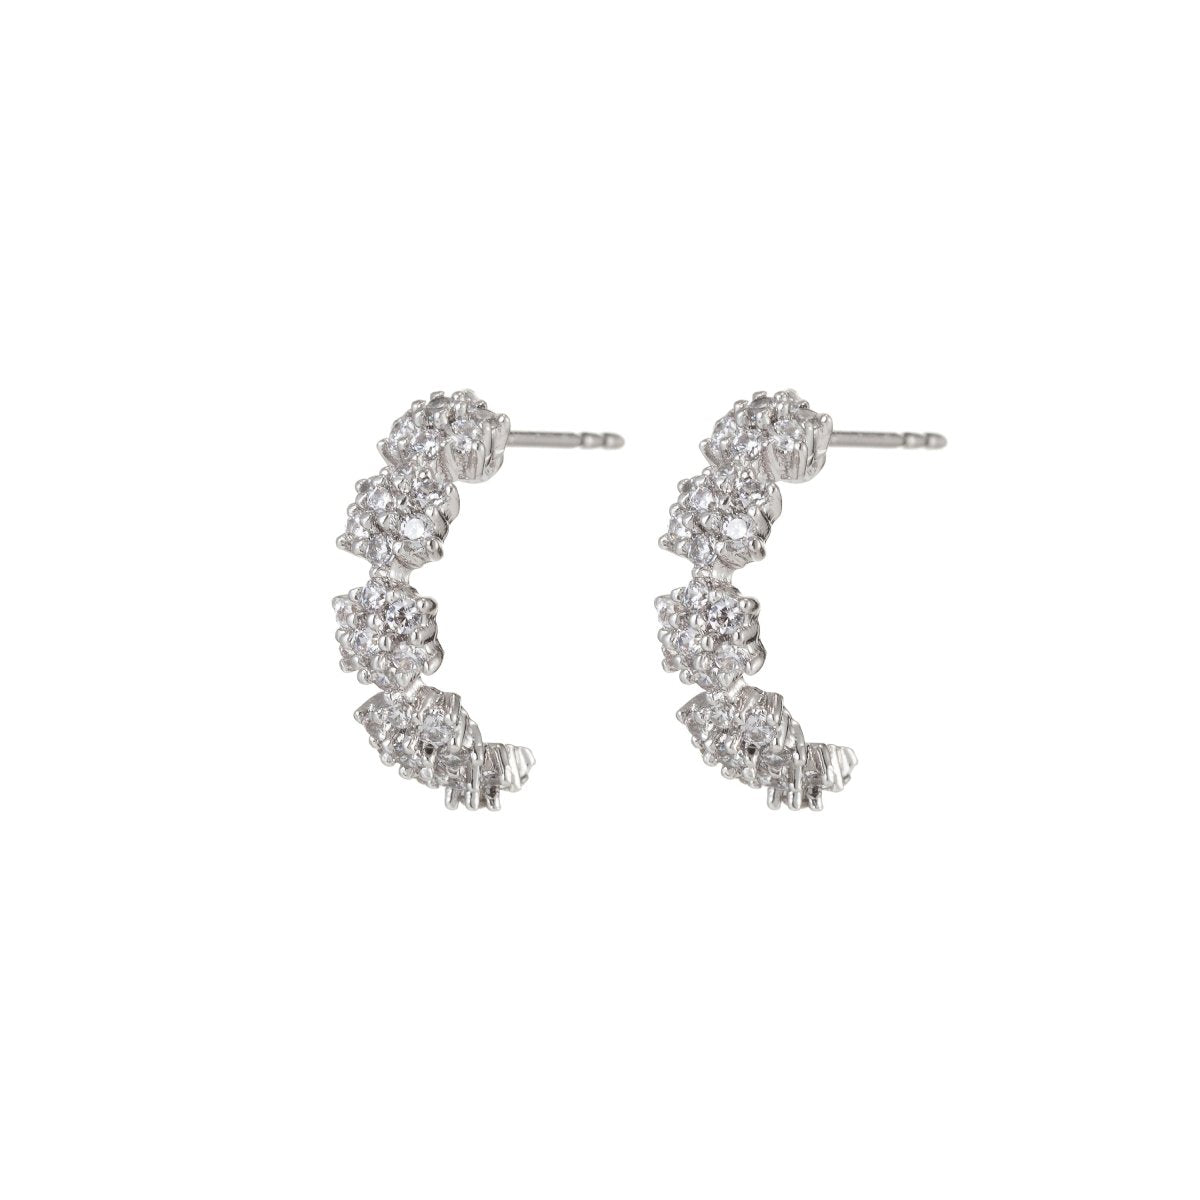 Half hoop earrings, sterling silver earrings, Micro Pave earrings, dainty earrings, Cubic zirconia hoop earrings, small hoop earrings, gifts Q-034 Q-035 - DLUXCA